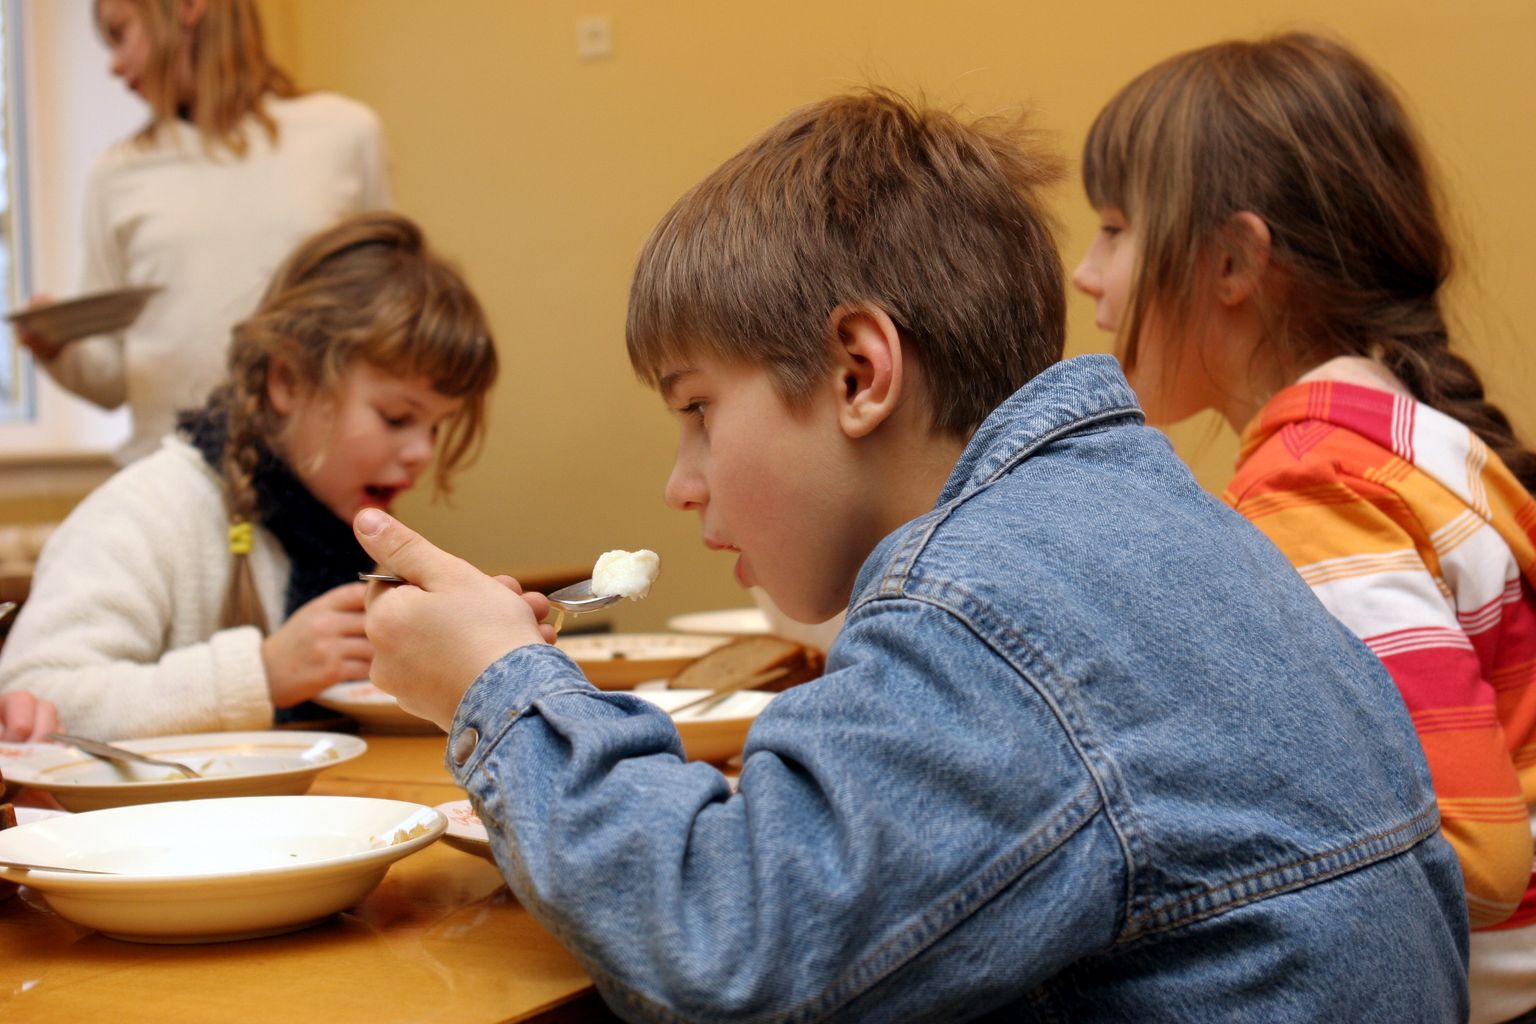 Pildil on Risti põhikooli koolilõuna. Pilt on tehtud koolisööklas, kus söövad 2 ja 3 klassi pikapäevarühma lapsed.